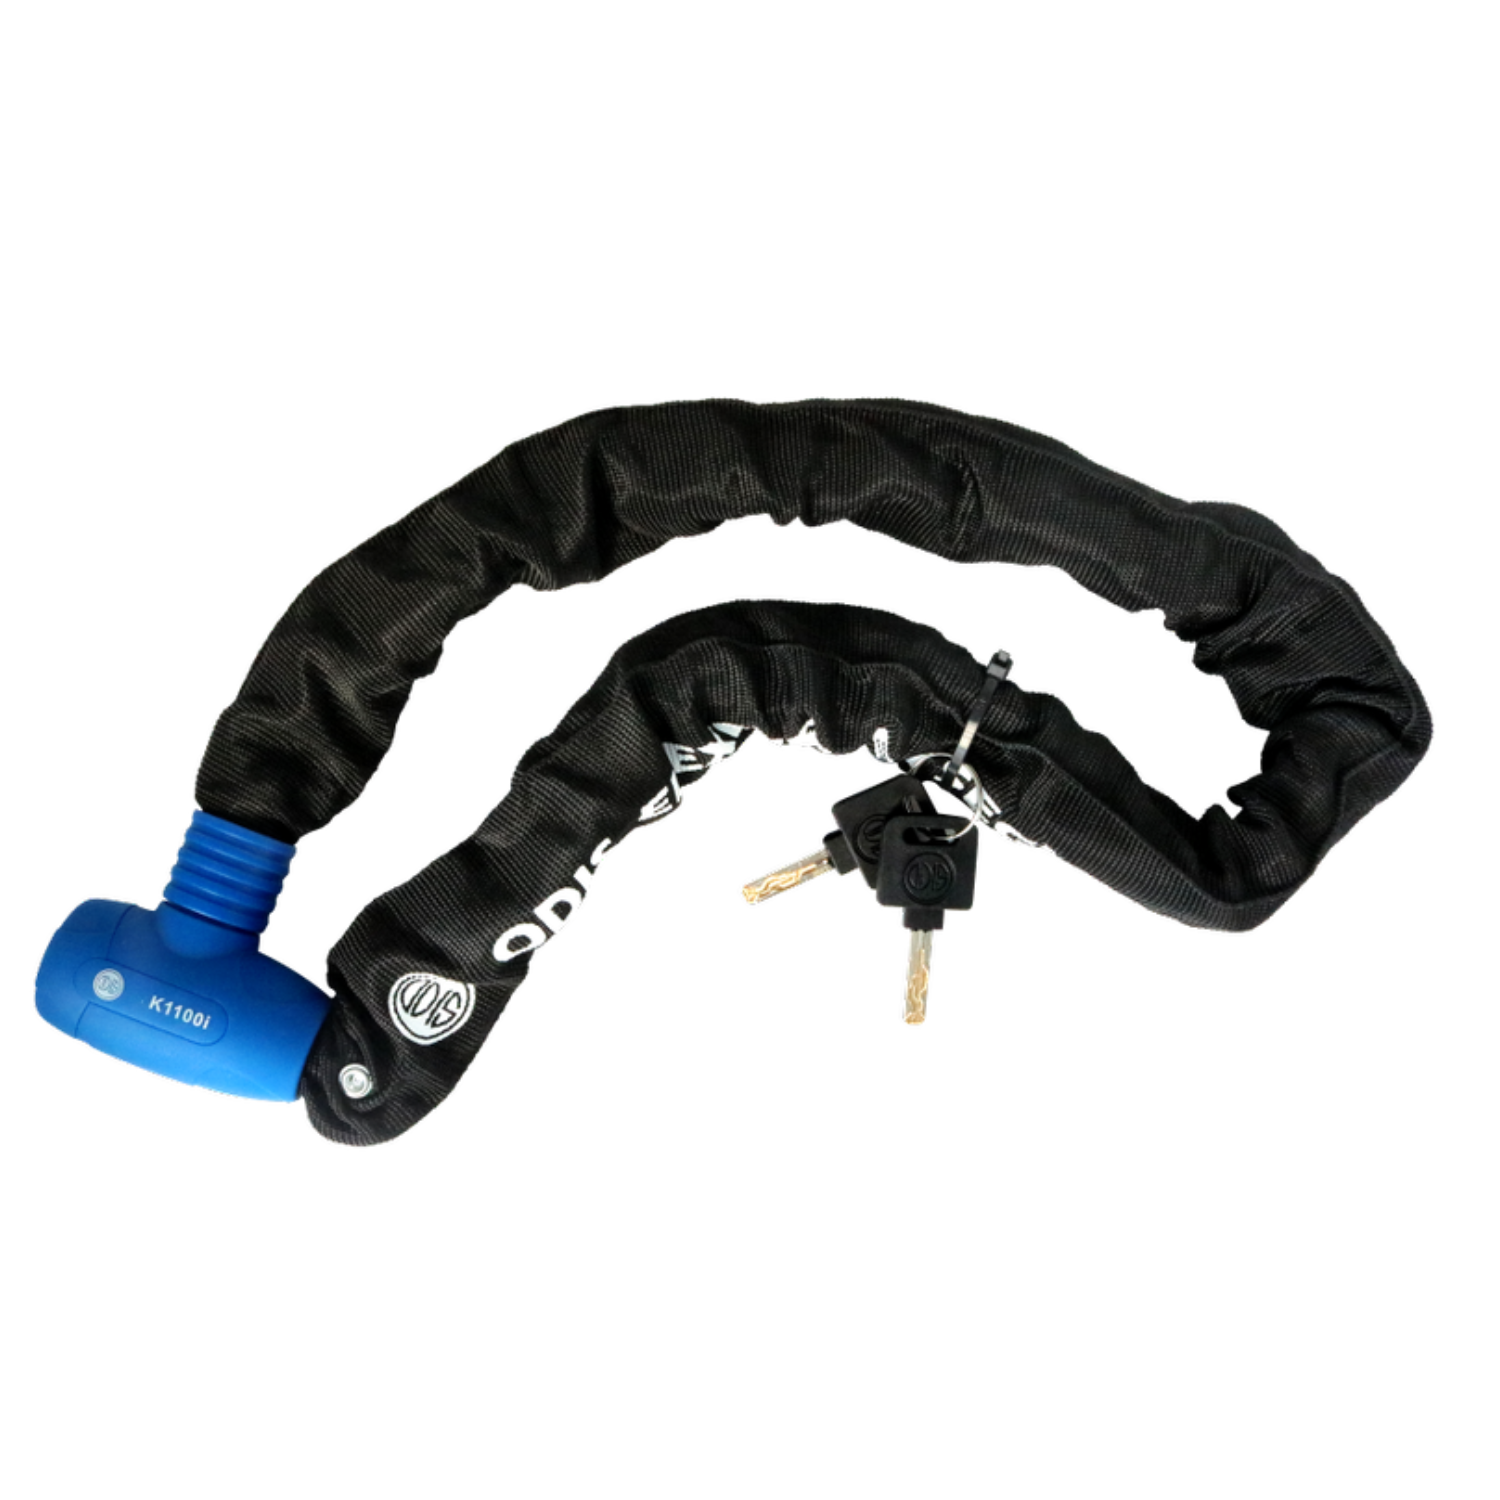 Candado cadena integrada Odis K1100i 9,5mm x 1 m Azul/Negro Cartón